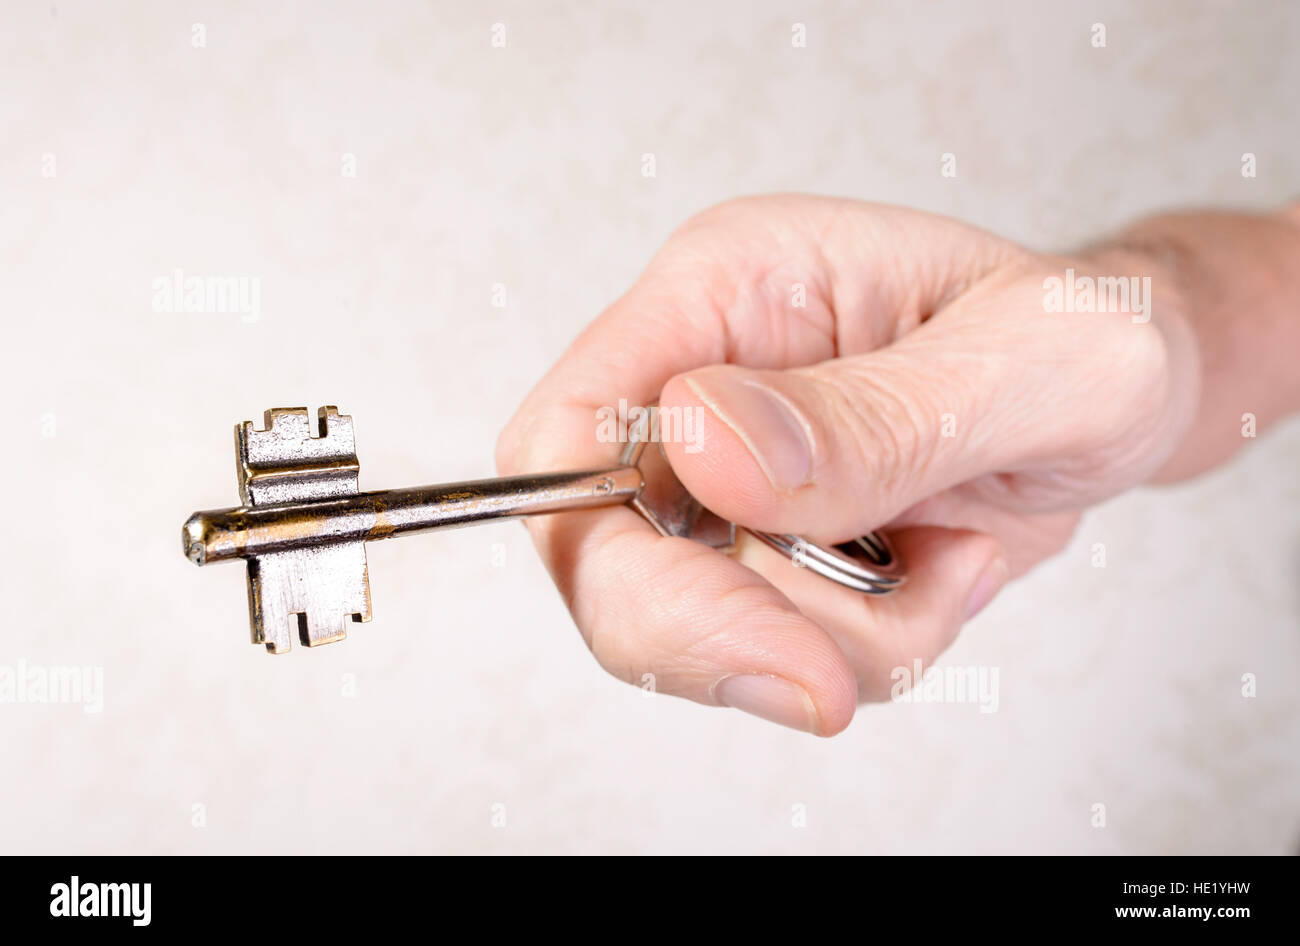 Una mano d'uomo è in possesso di una chiave di apertura o chiusura di una porta, su sfondo chiaro Foto Stock